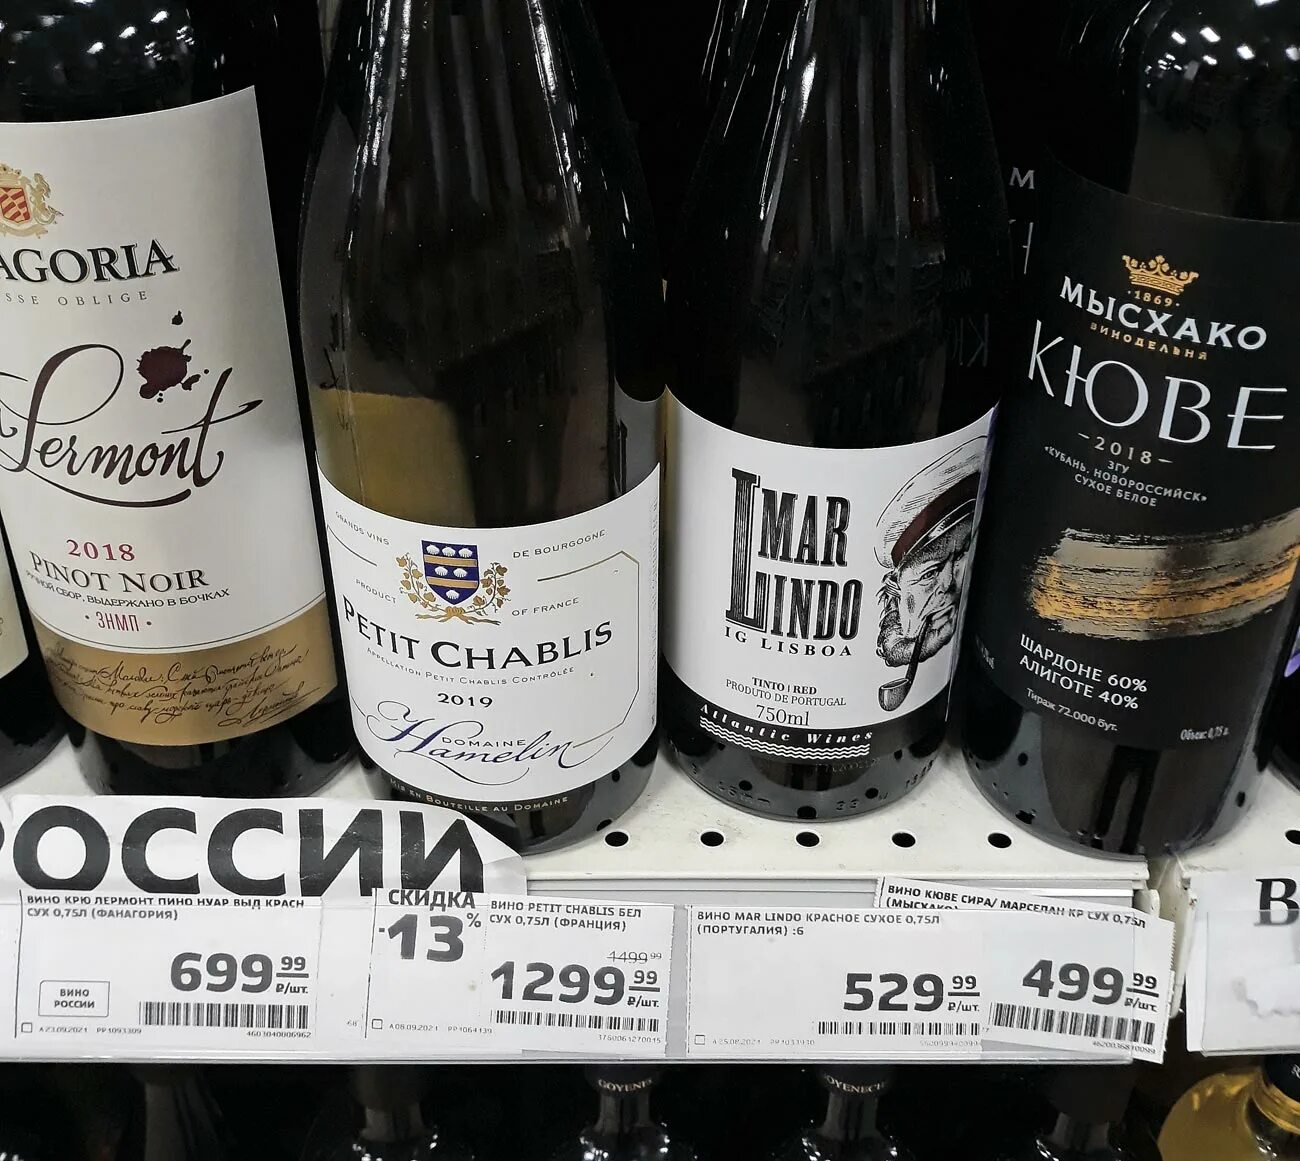 Дом вина отзывы. Вино Mar lindo красное сухое 0.75 Португалия. Португальское вино в магните. Вино в магните.